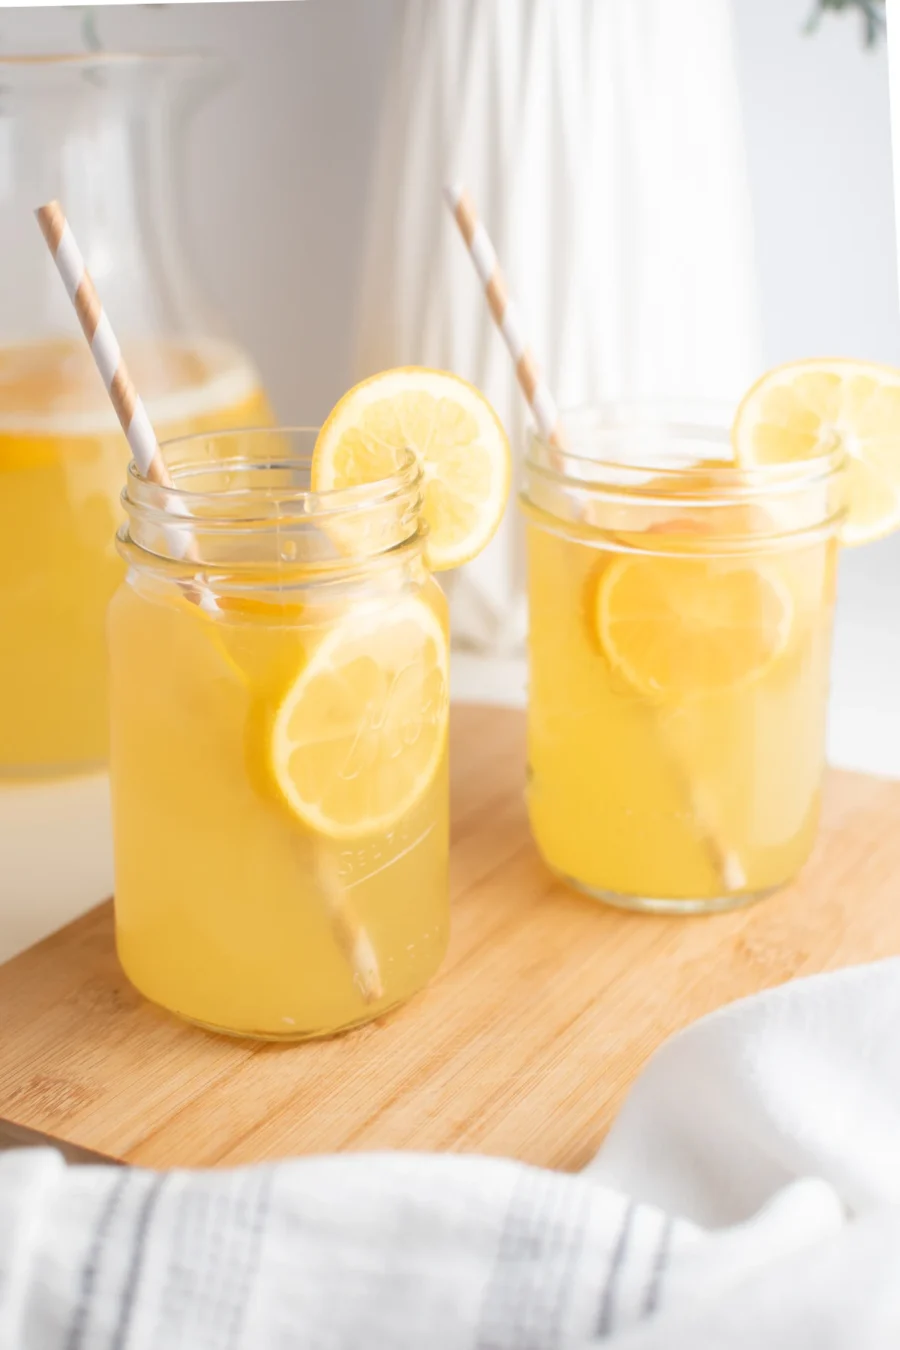 Meyer Lemonade